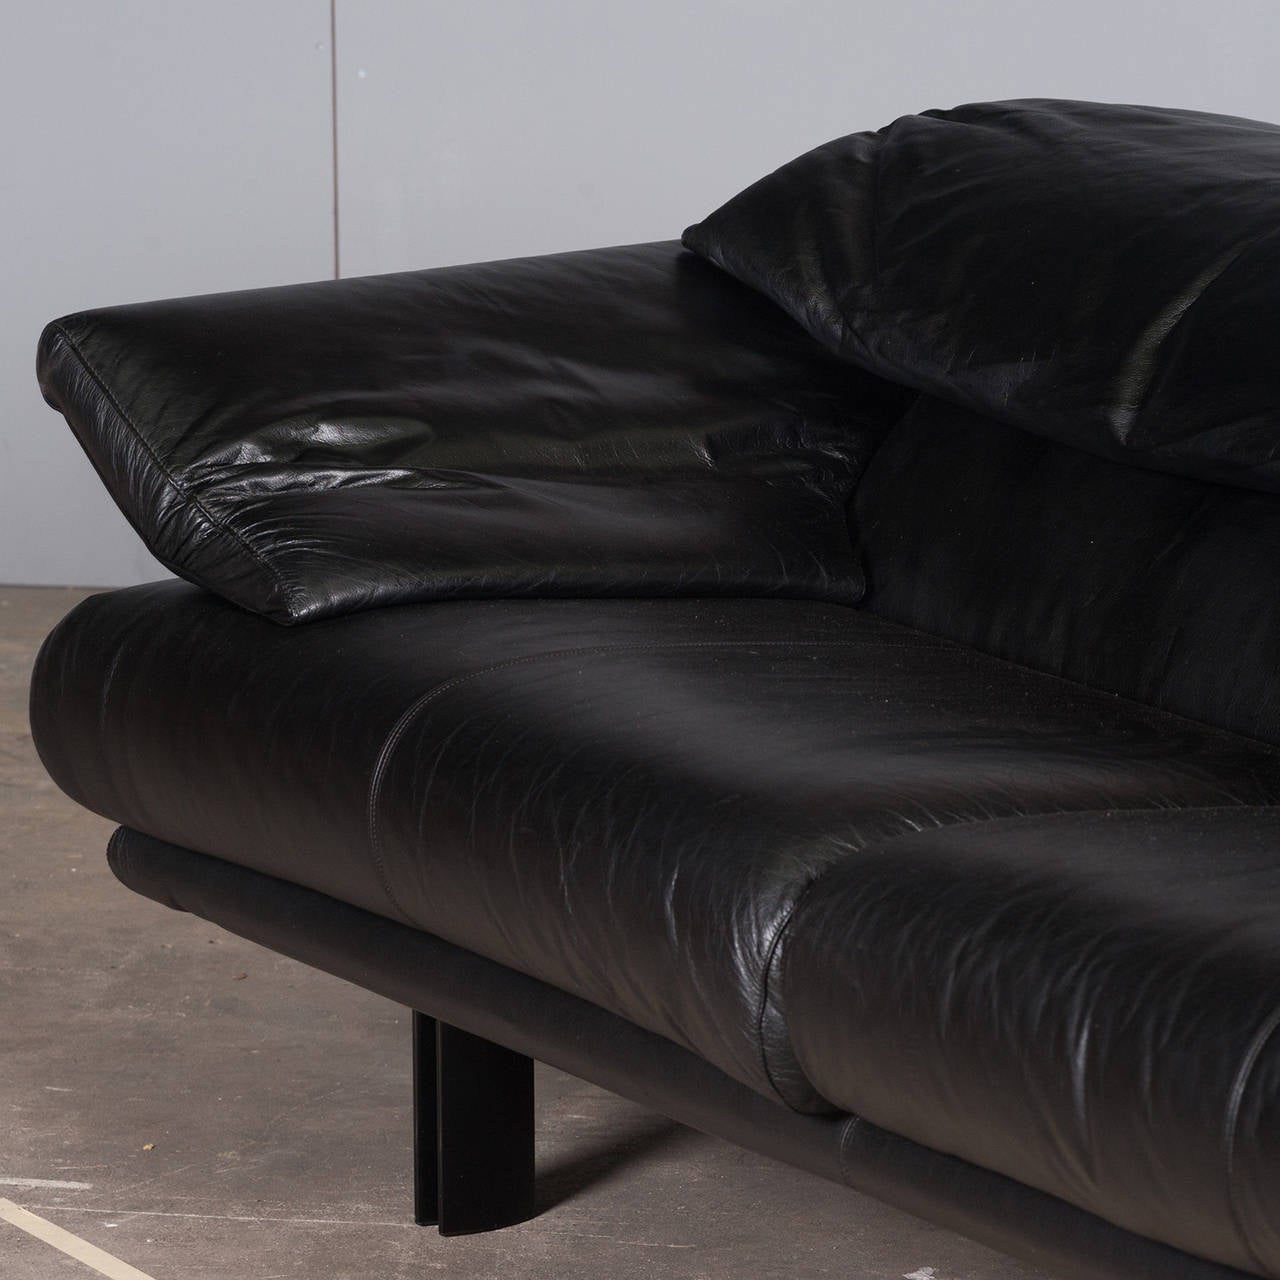 Late 20th Century Italian Paolo Piva 'Alanda' Sofa in Black Leather for B&B ITALIA, 1980s